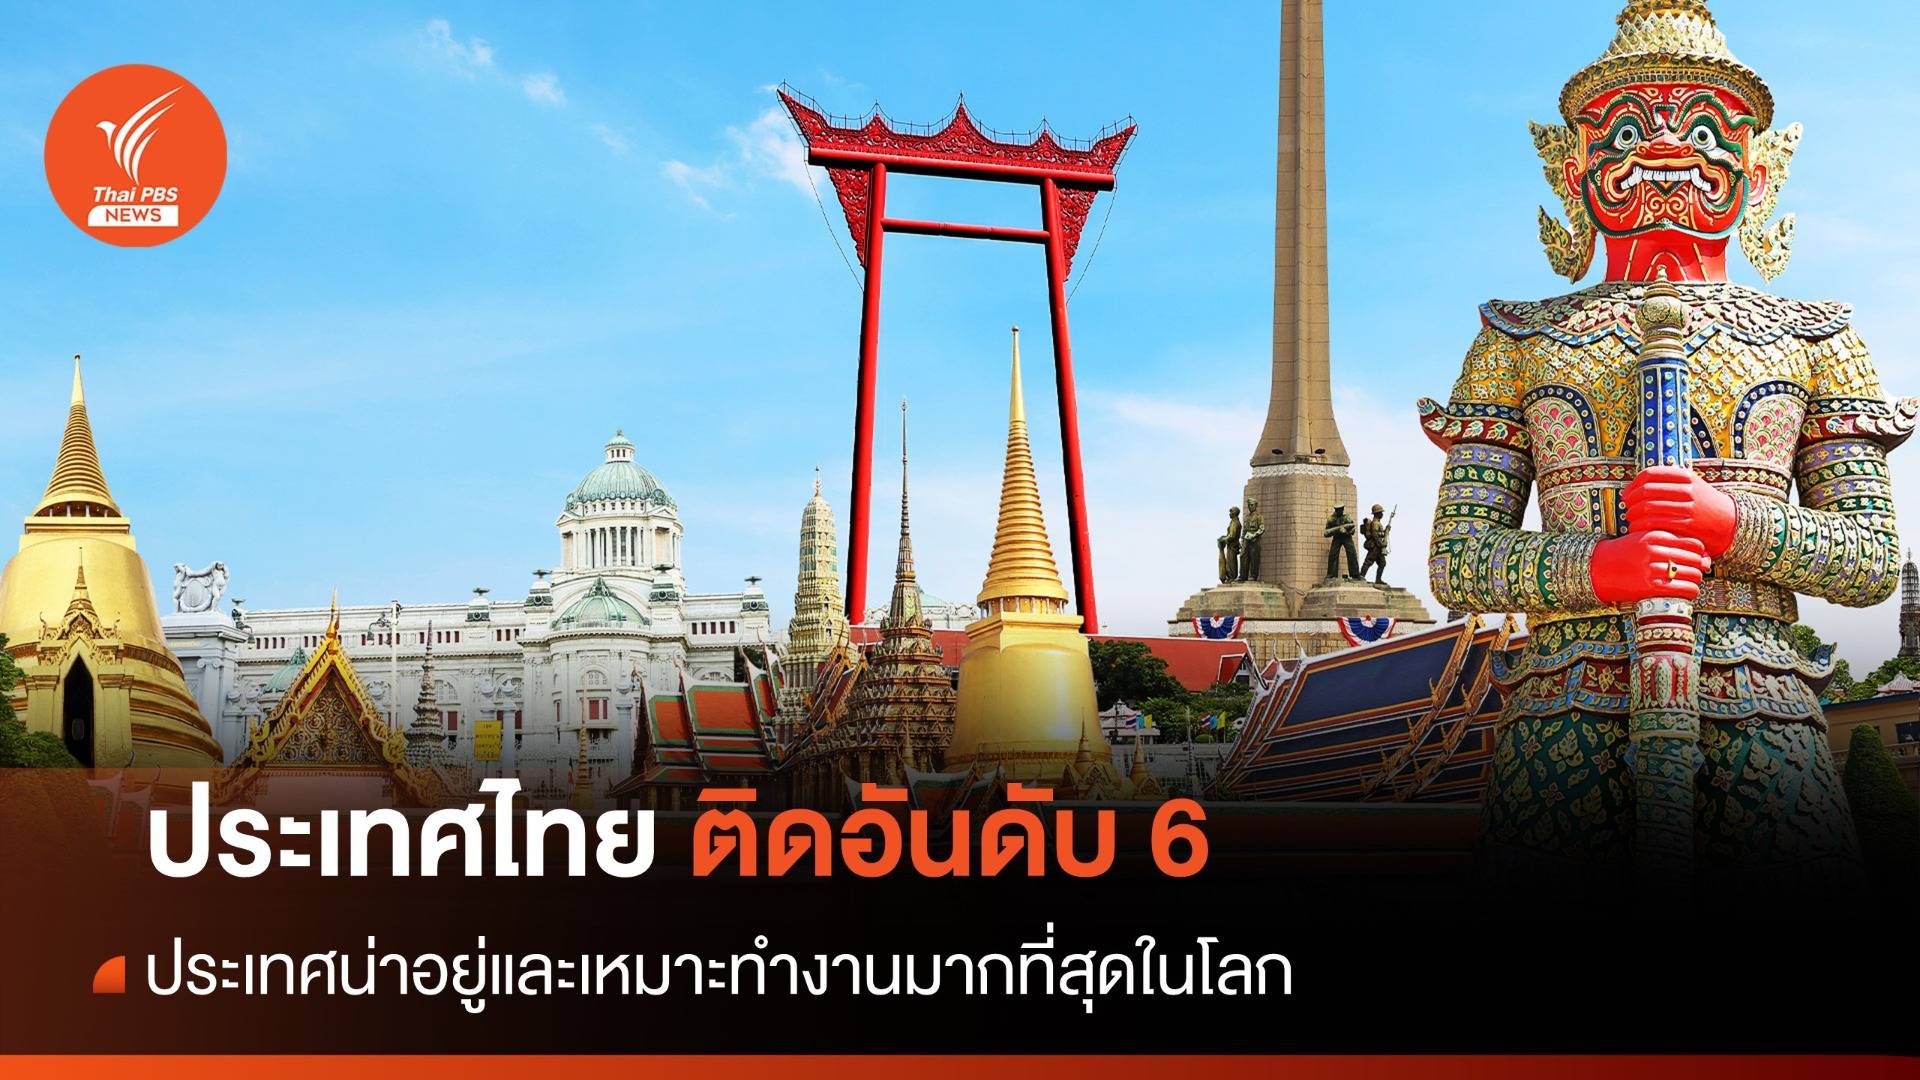 ประเทศไทย ติดอันดับ 6 ประเทศน่าอยู่และเหมาะทำงานมากที่สุดในโลก